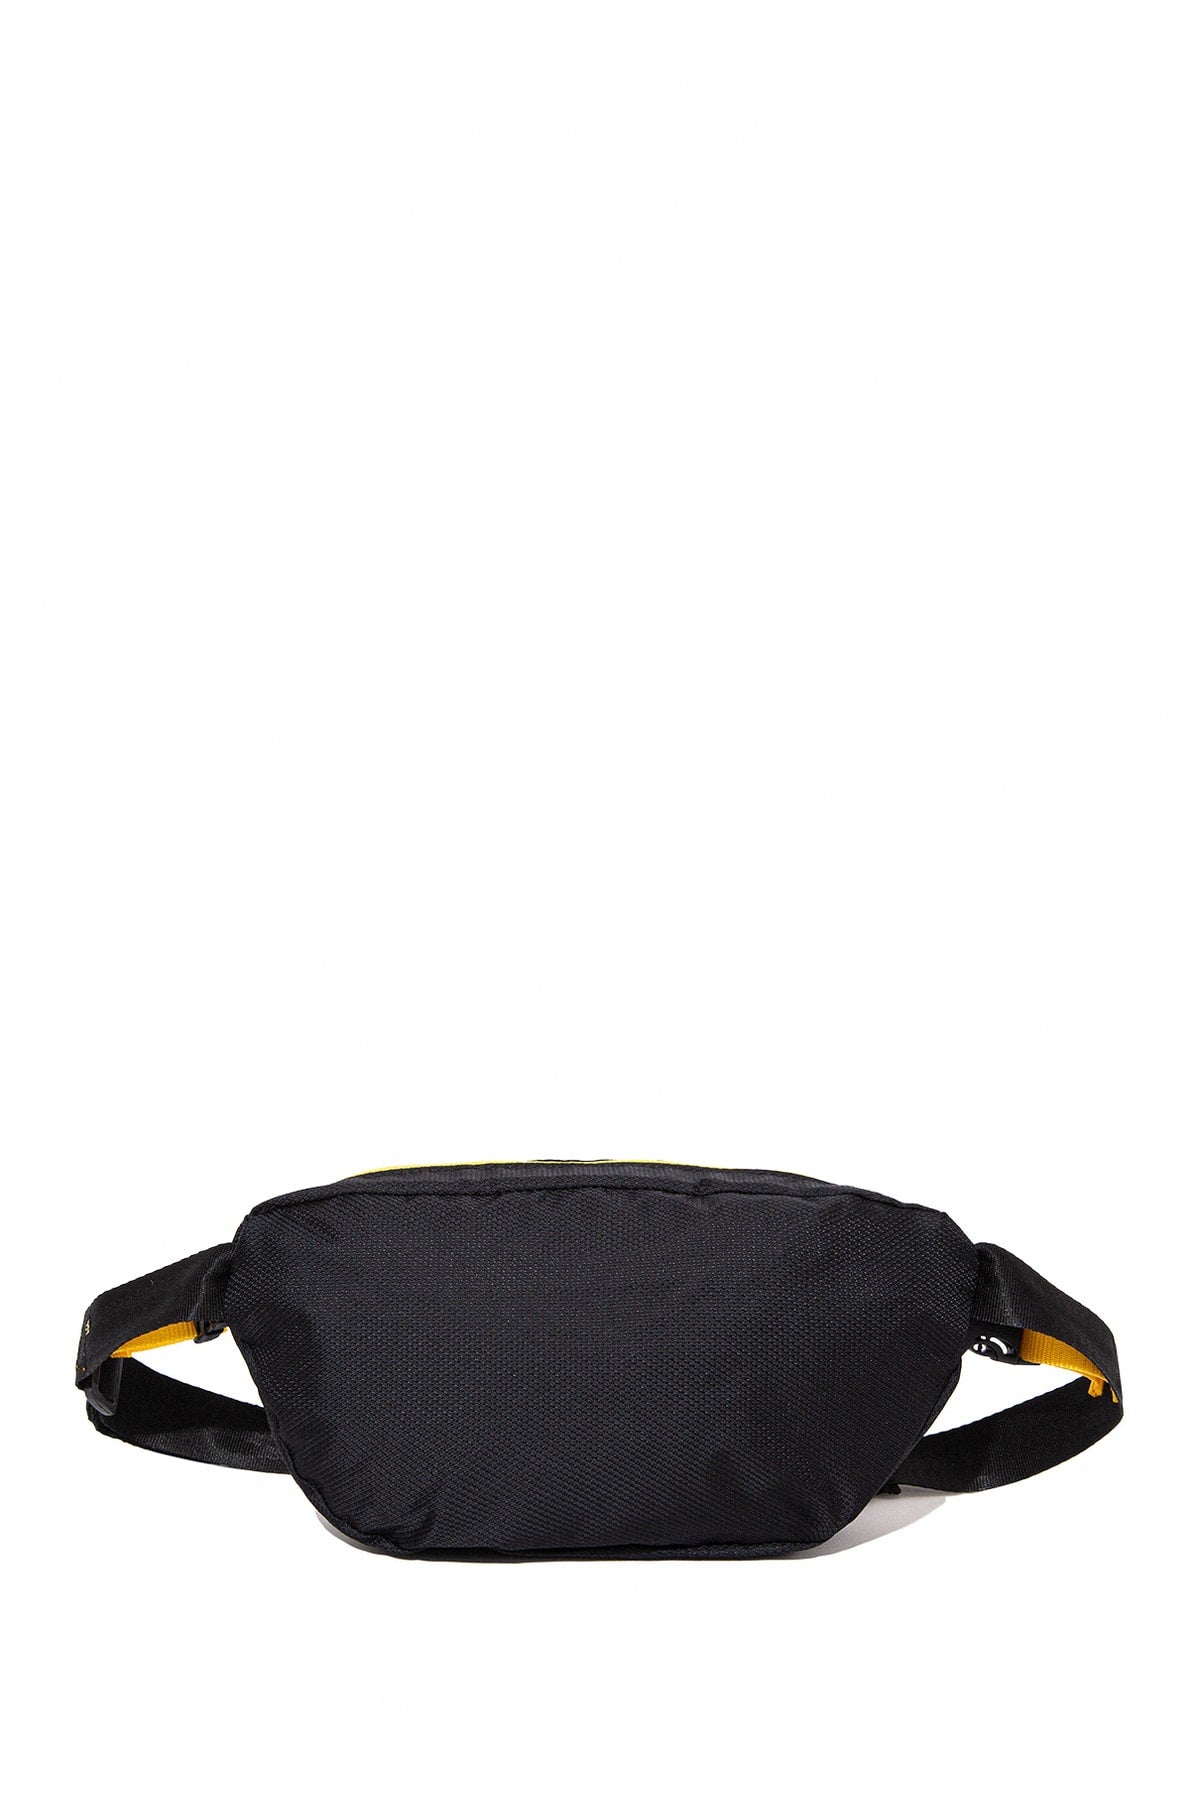 Black Waist Bag 0910689-900